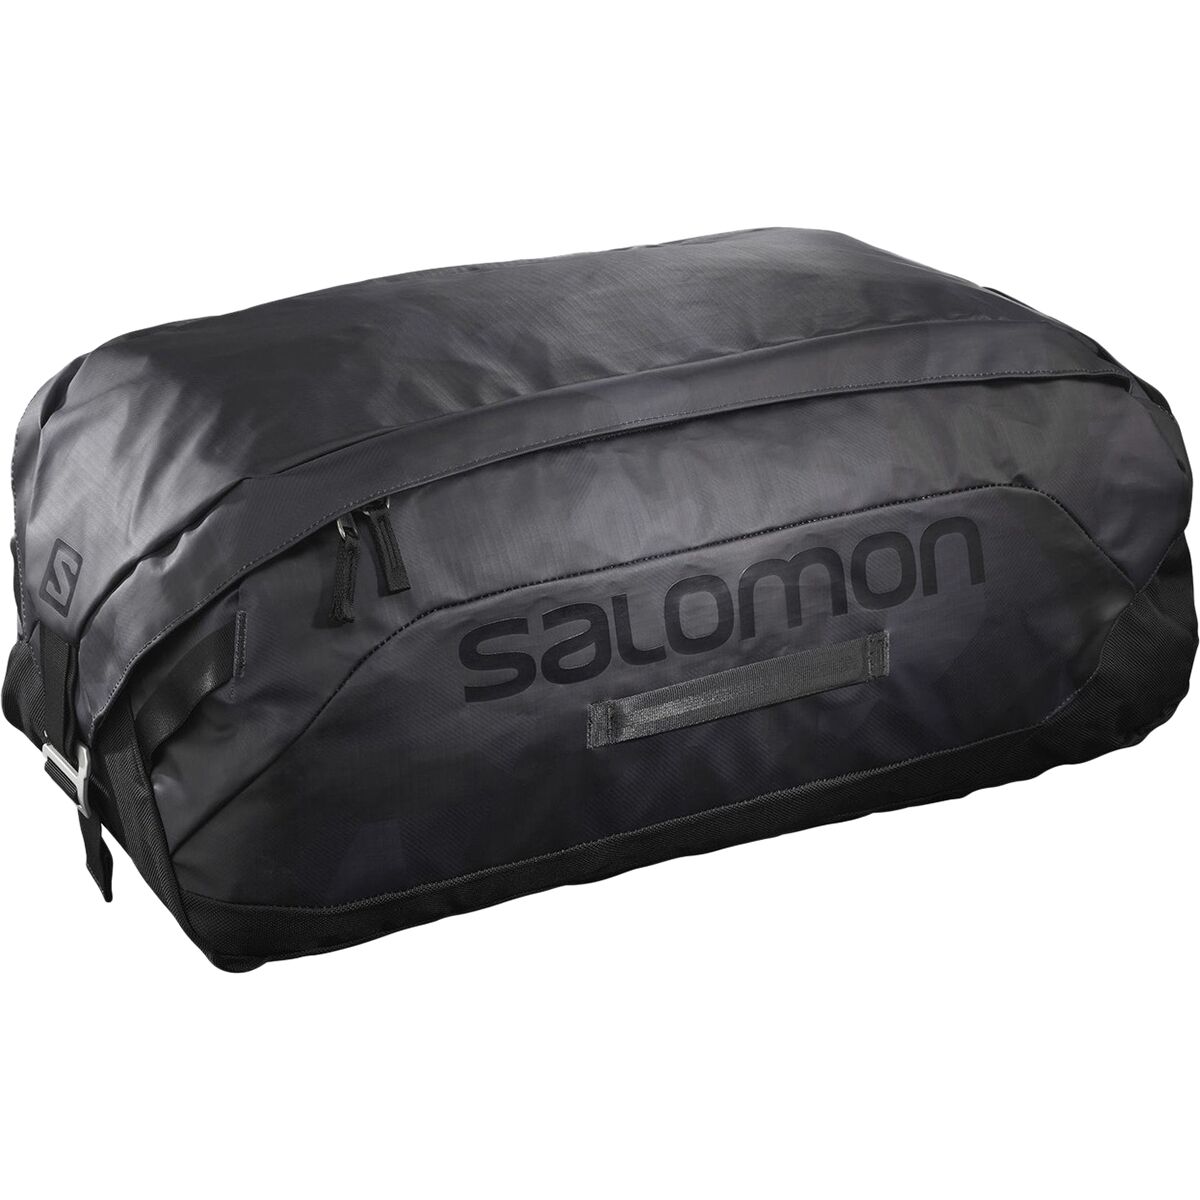 jeg er træt Hvile enestående Salomon Outlife 45L Duffel Bag - Accessories